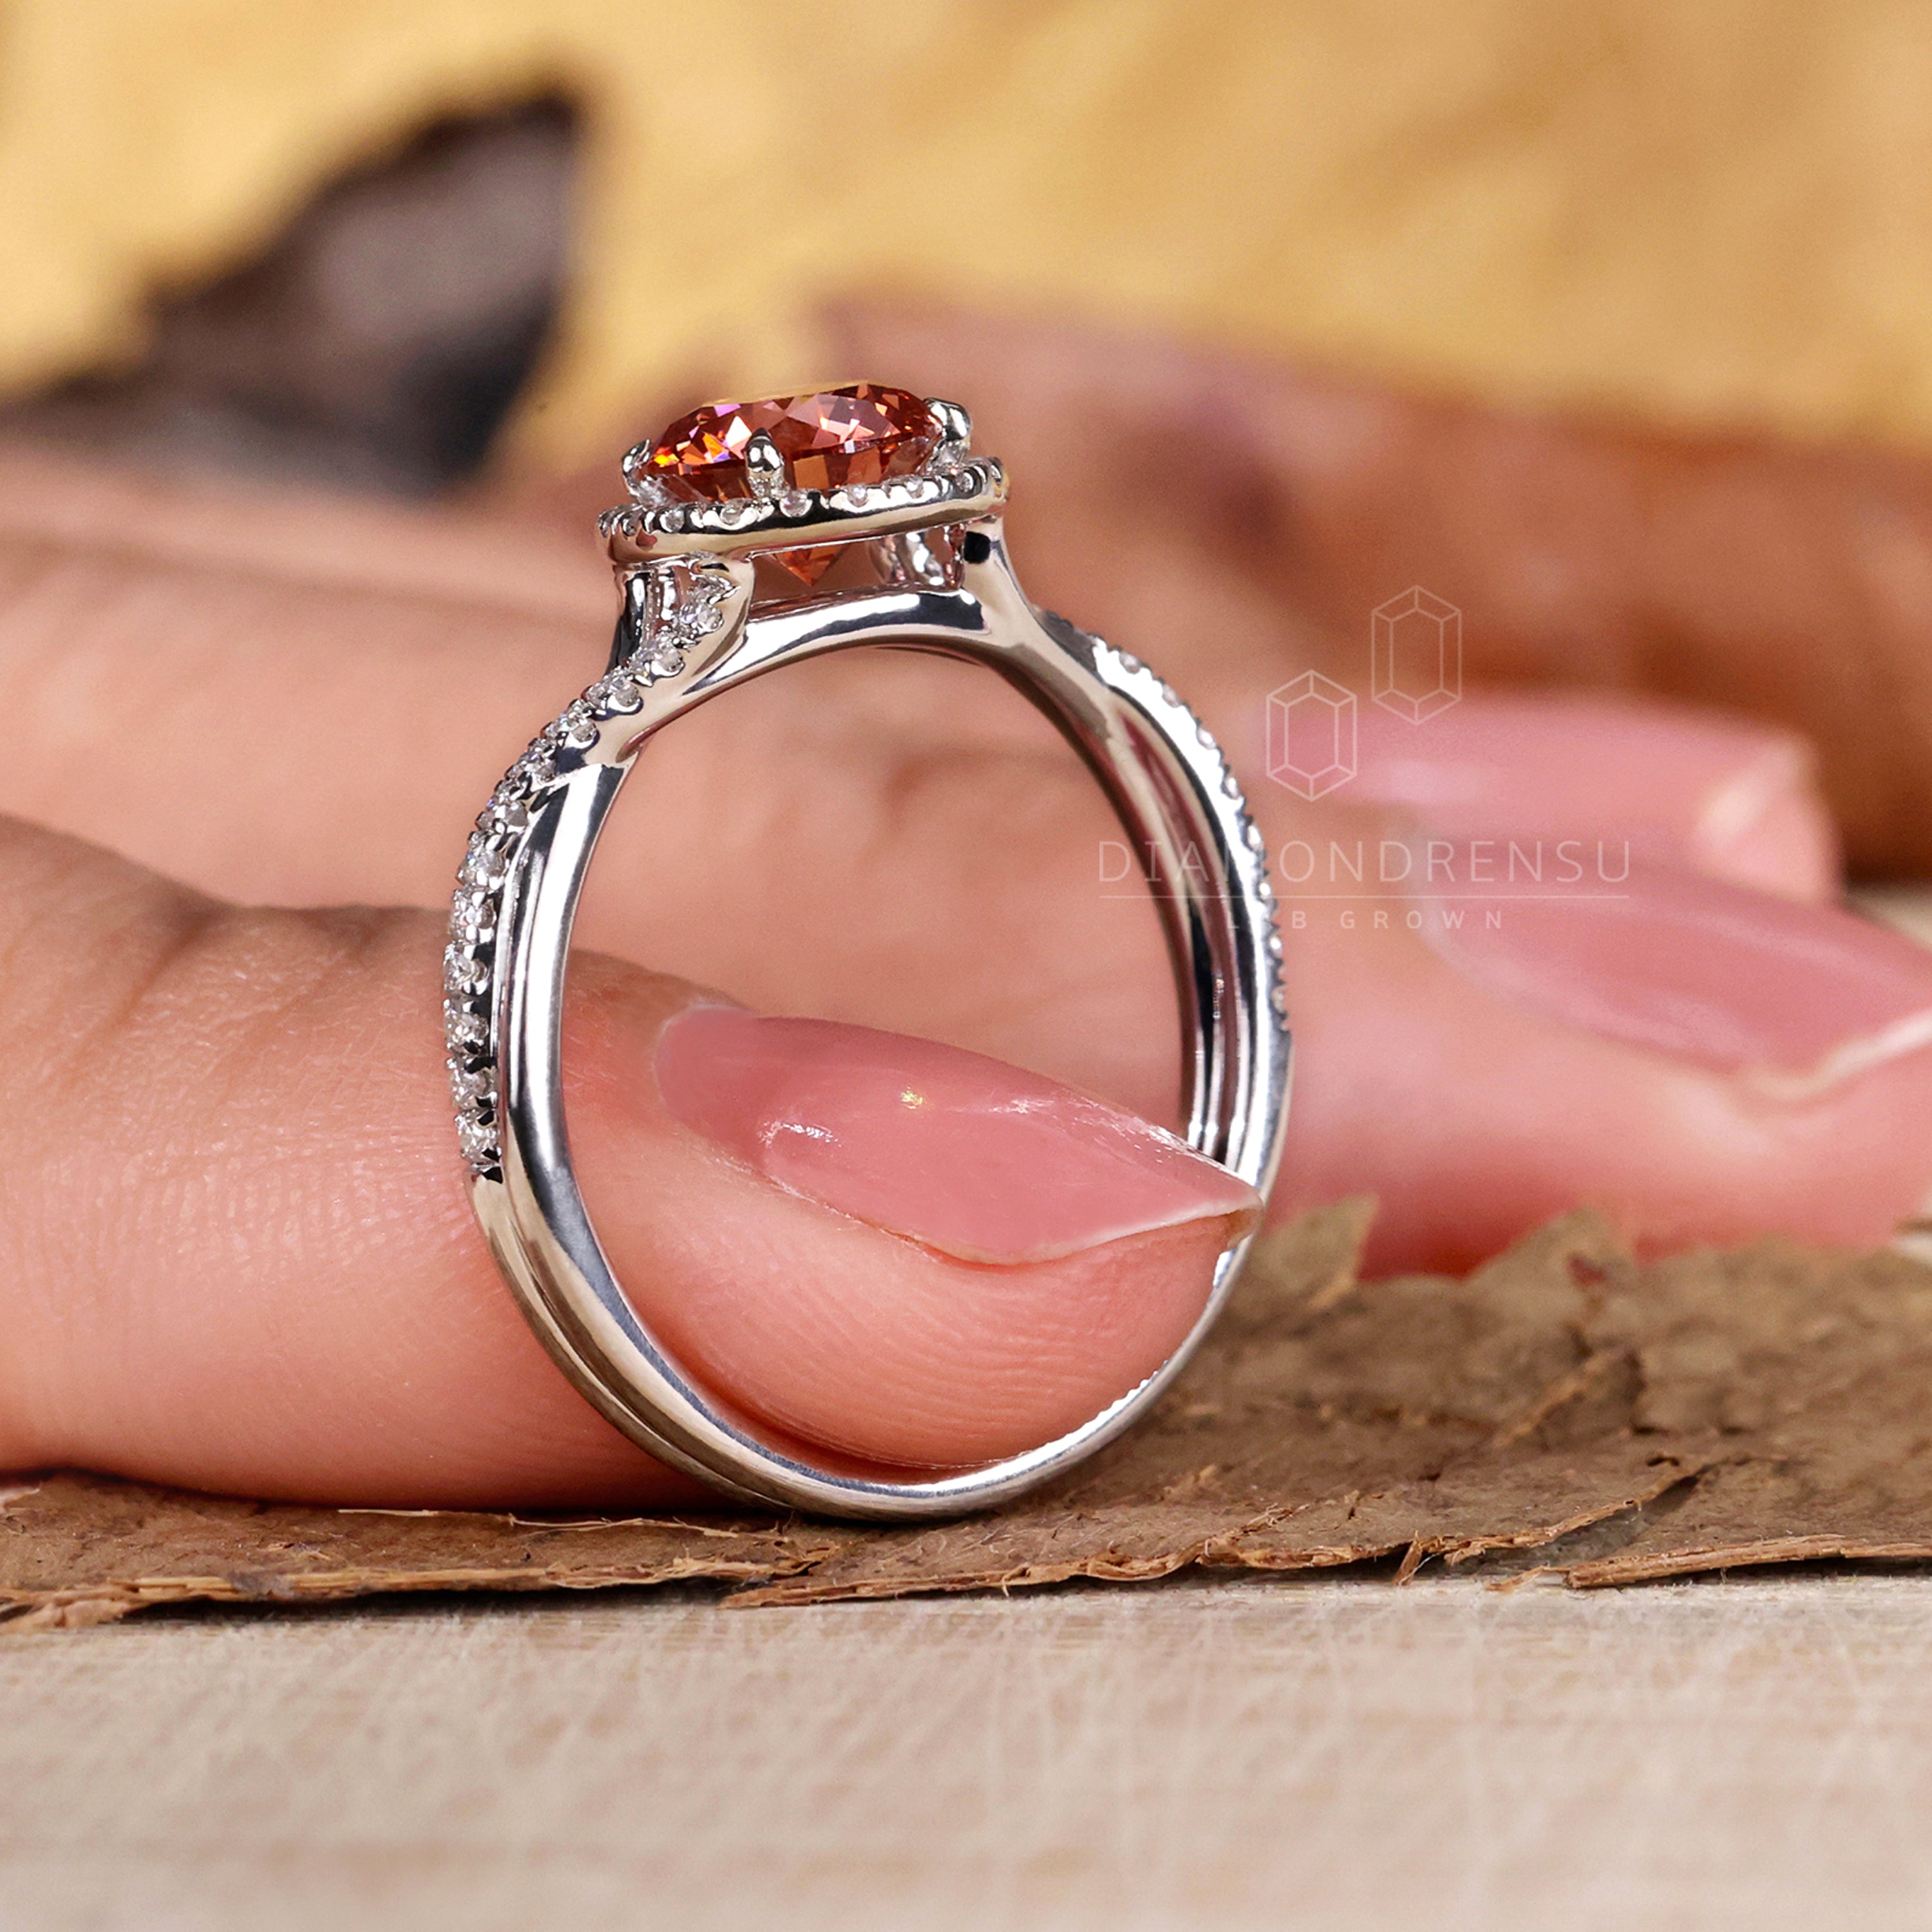 birthstone diamond ring - diamondrensu